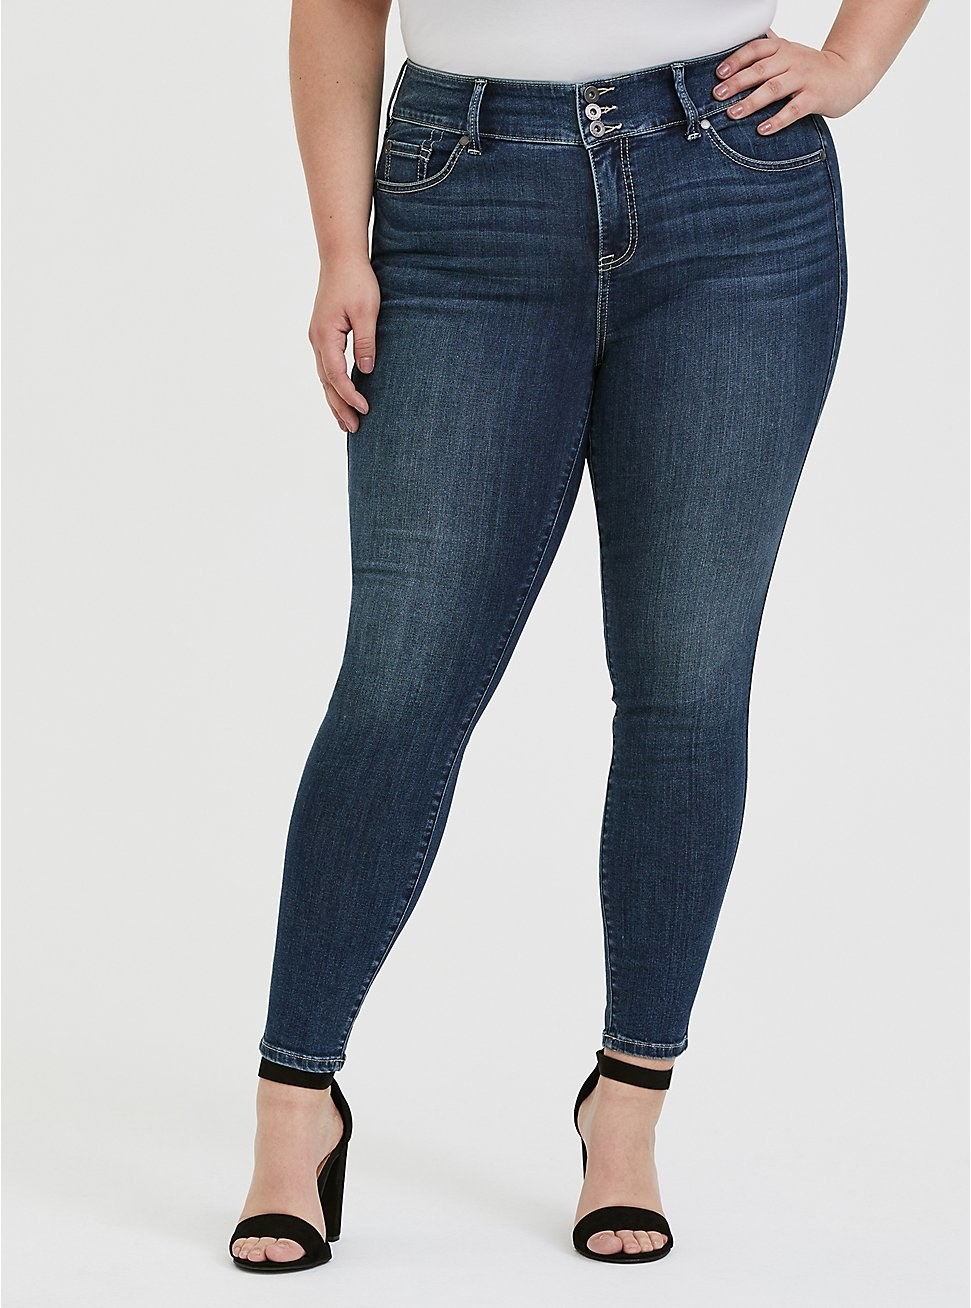 Ladies Jeggings Pants Womens Stretchy Slim Skinny Fit Denim Jeans Look Casual US 